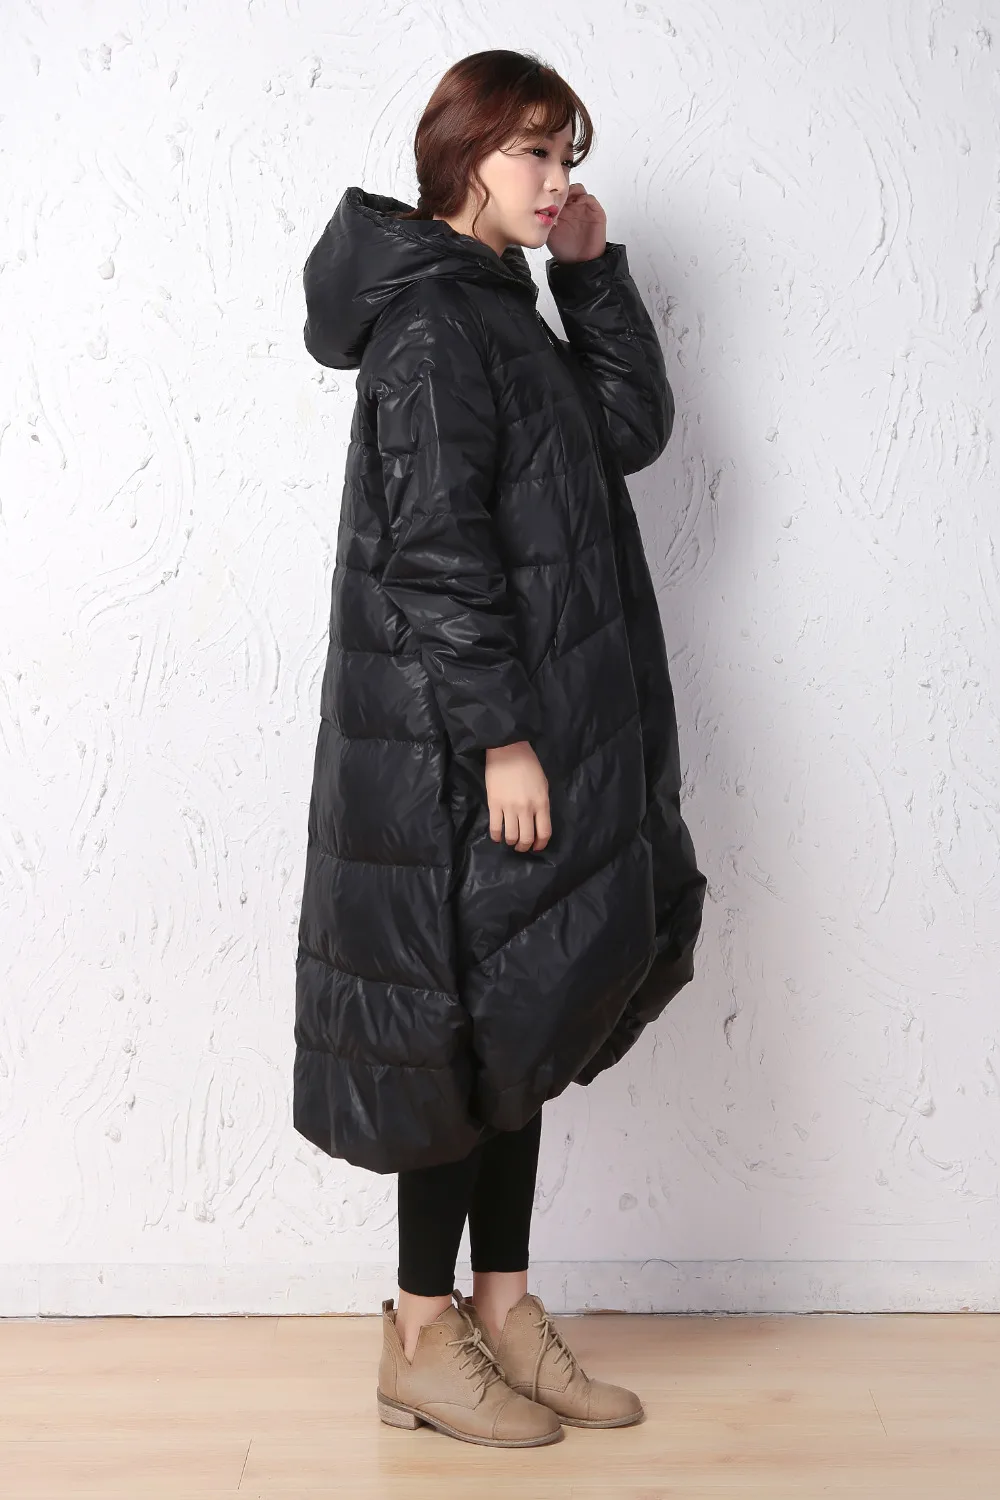 Свободный стиль пуховое пальто короткое переднее зимнее пальто большой подол вниз пальто